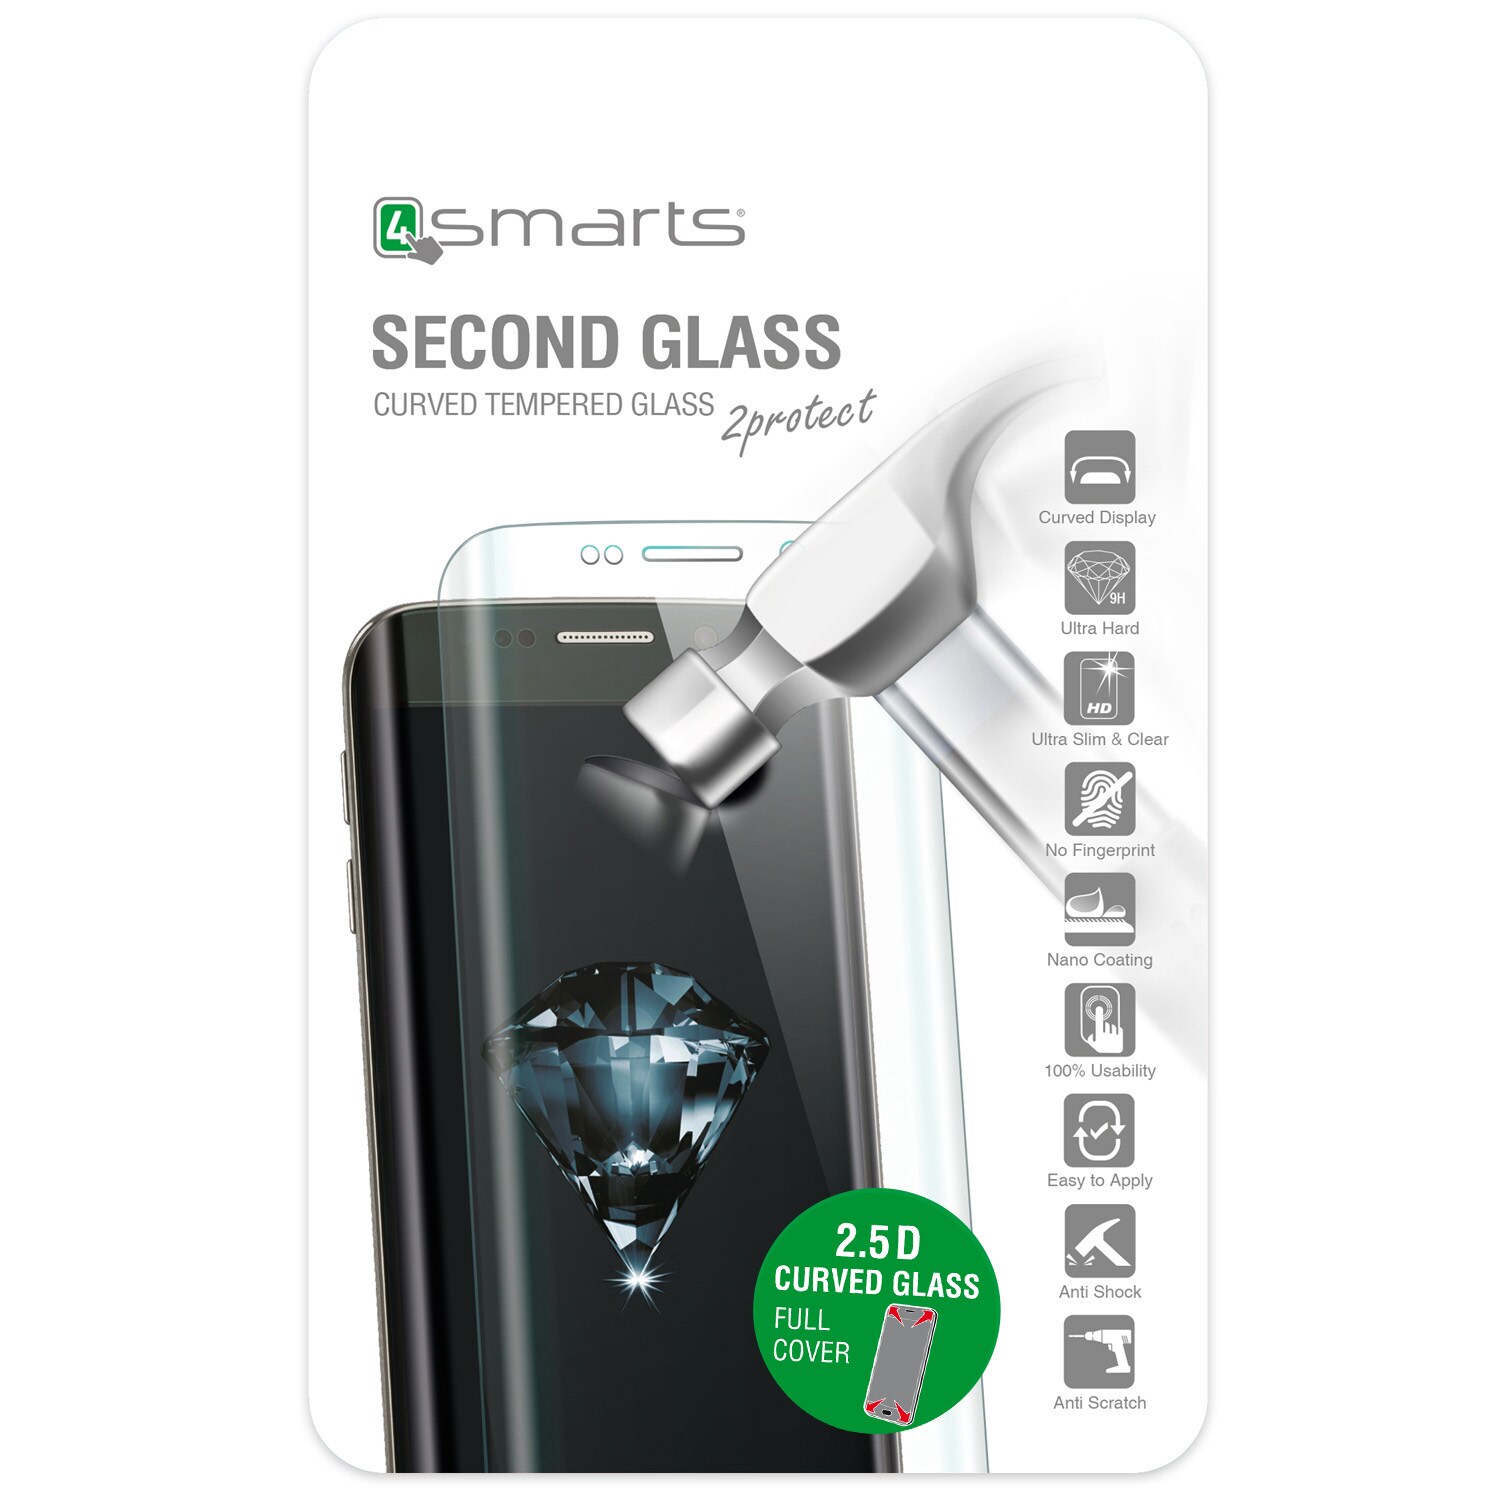 4smarts Second Glass Curved 2.5D til iPhone 7 -  Sort